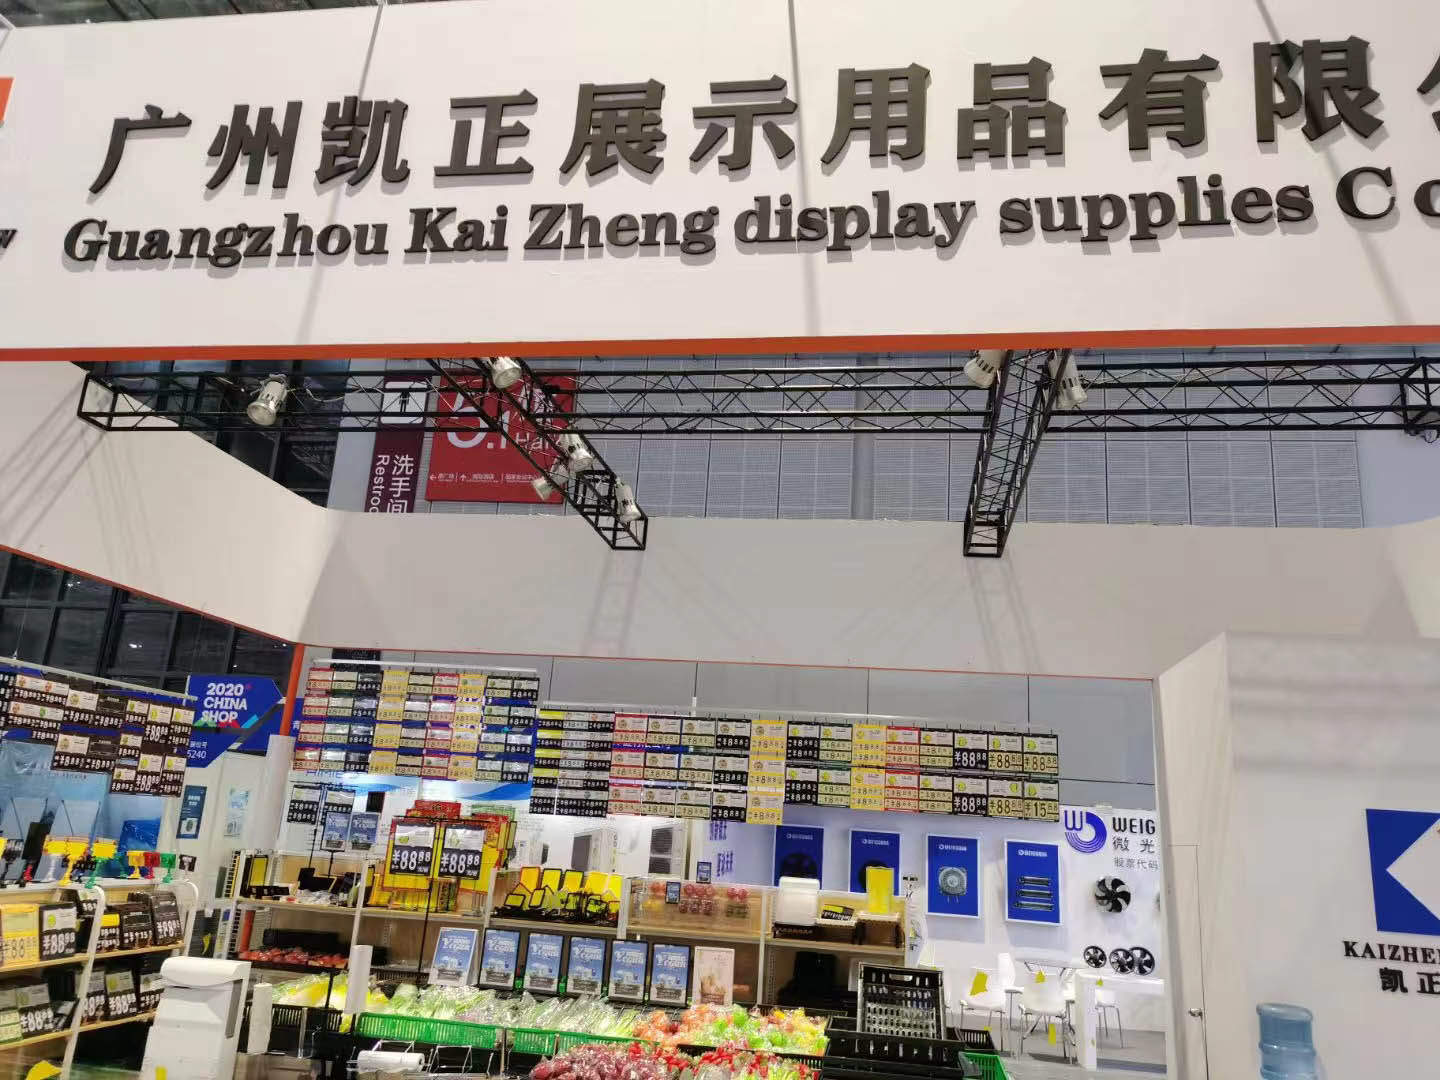 Guangzhou Kaizheng Display Products Co., Ltd. ilionekana kwenye Maonyesho ya Sekta ya Rejareja ya Shanghai